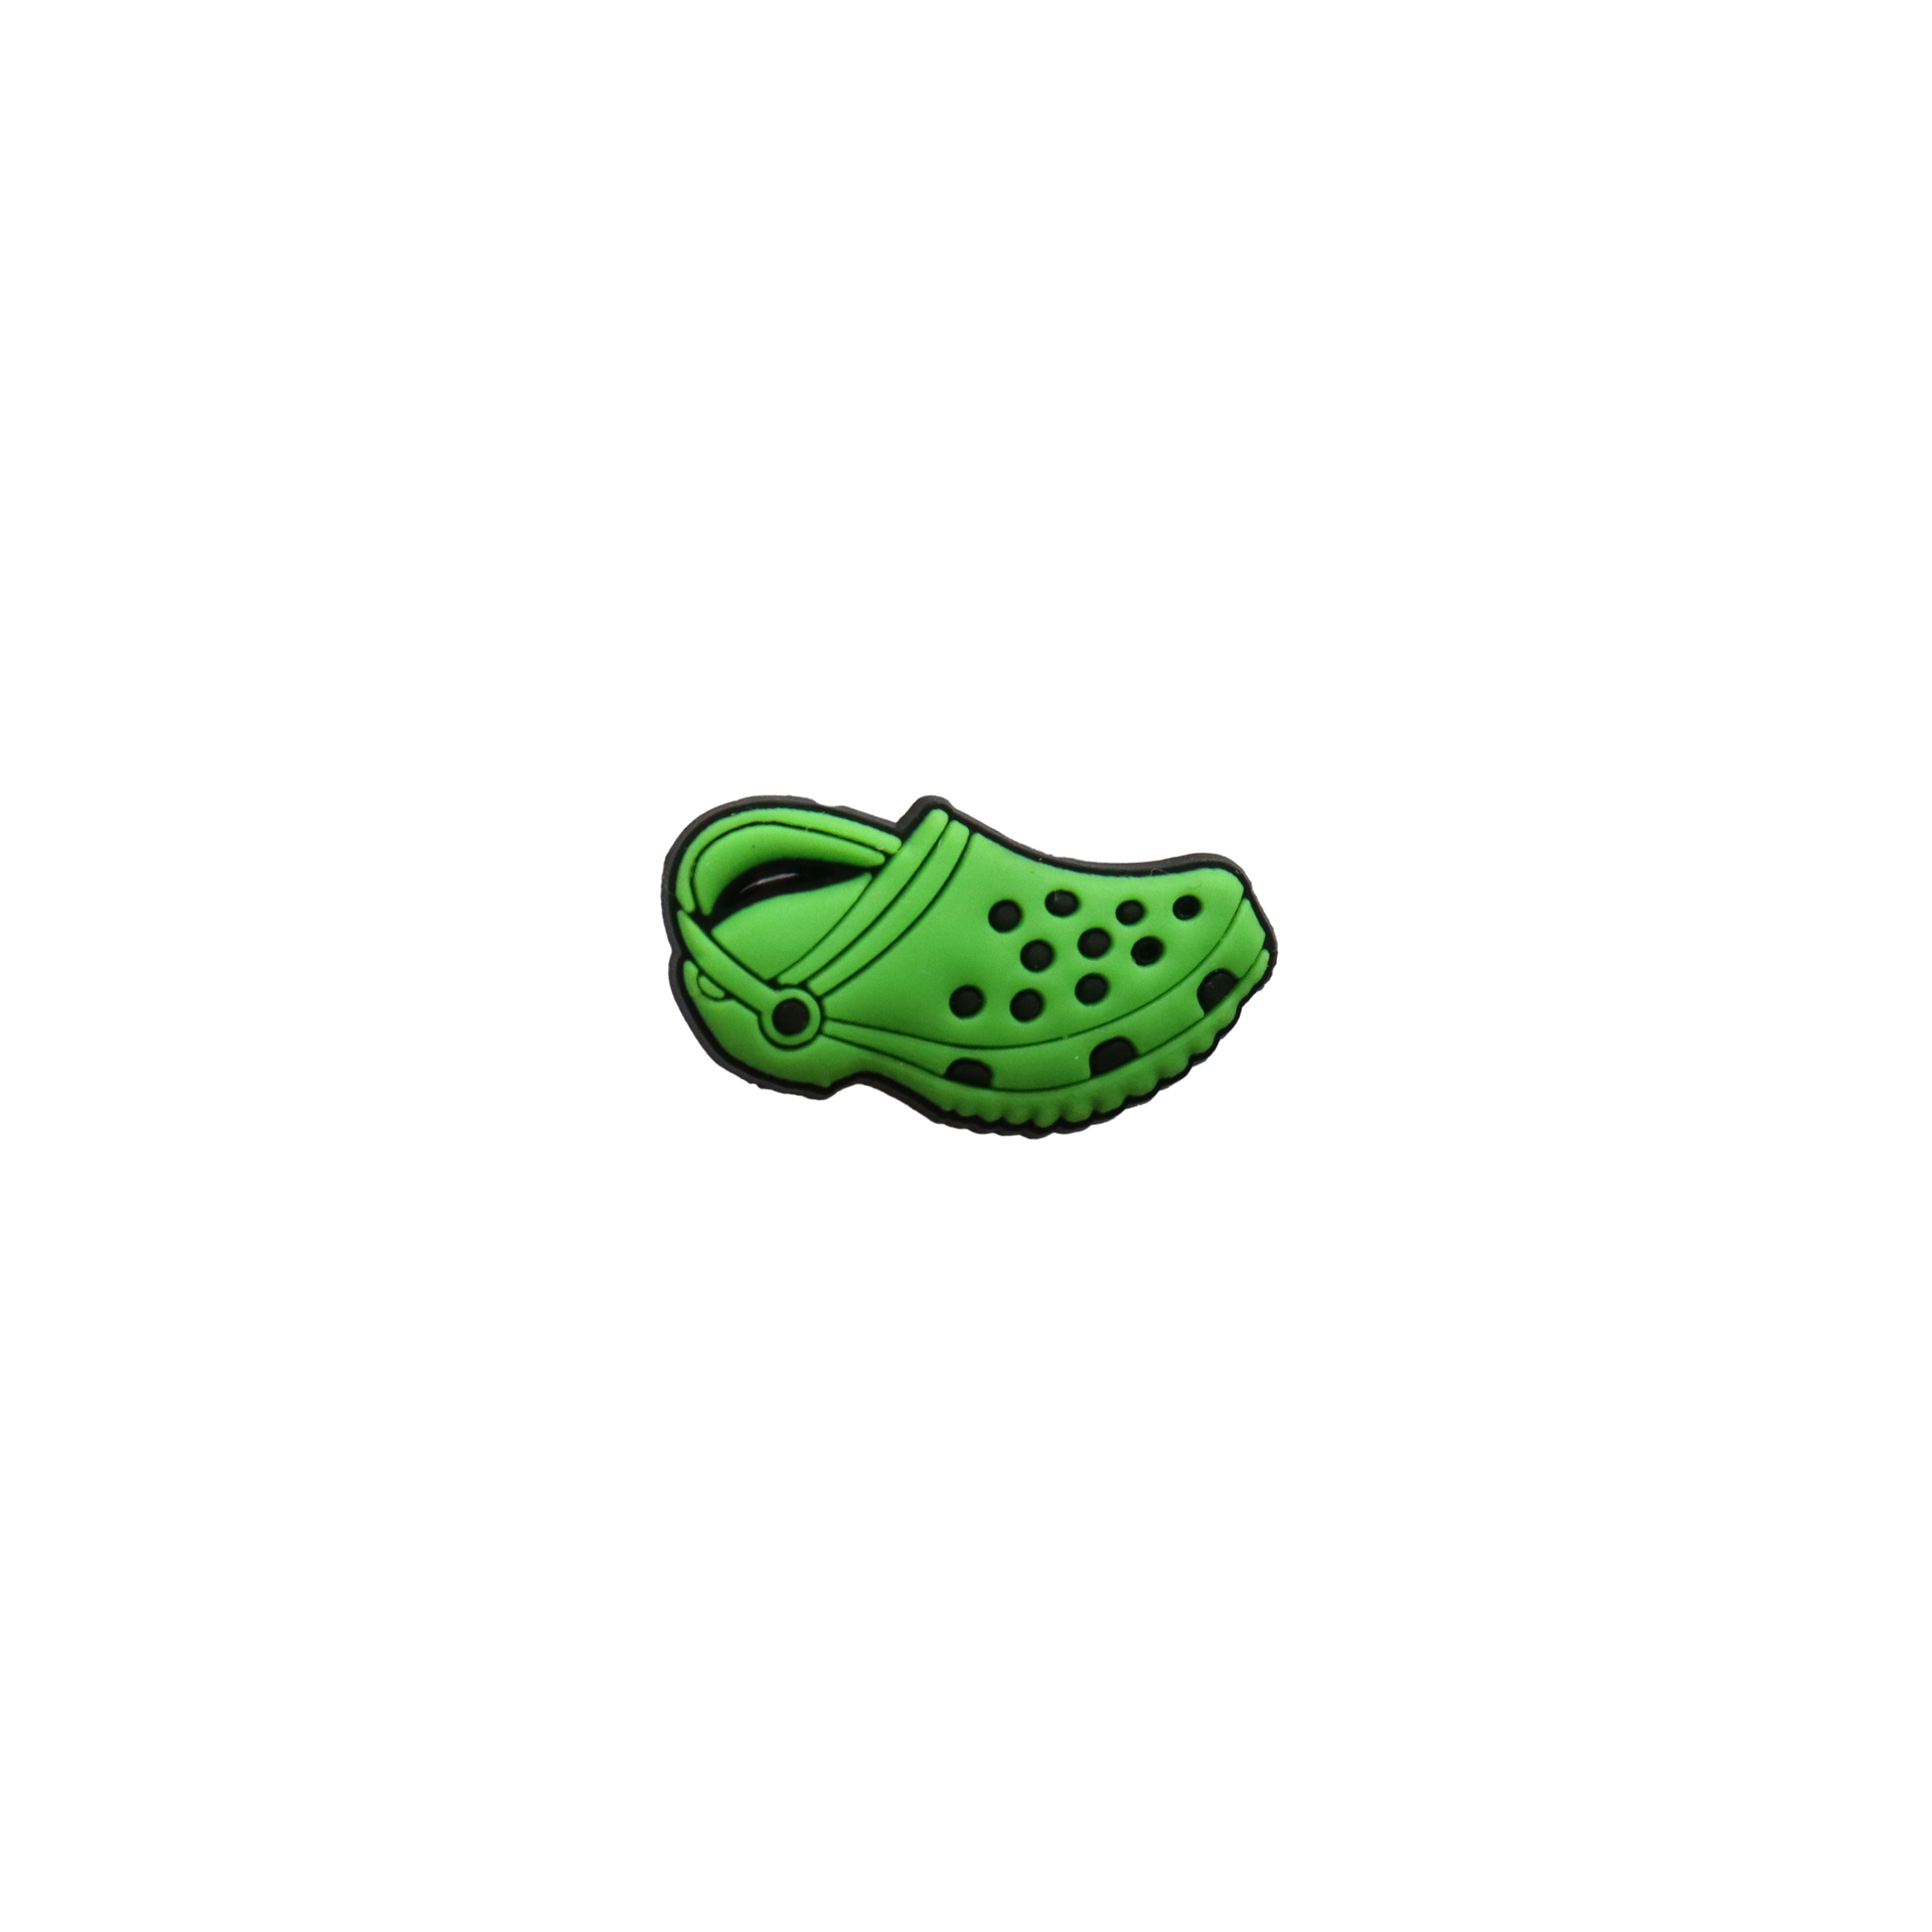 Green Croc Shoe Croc Charm